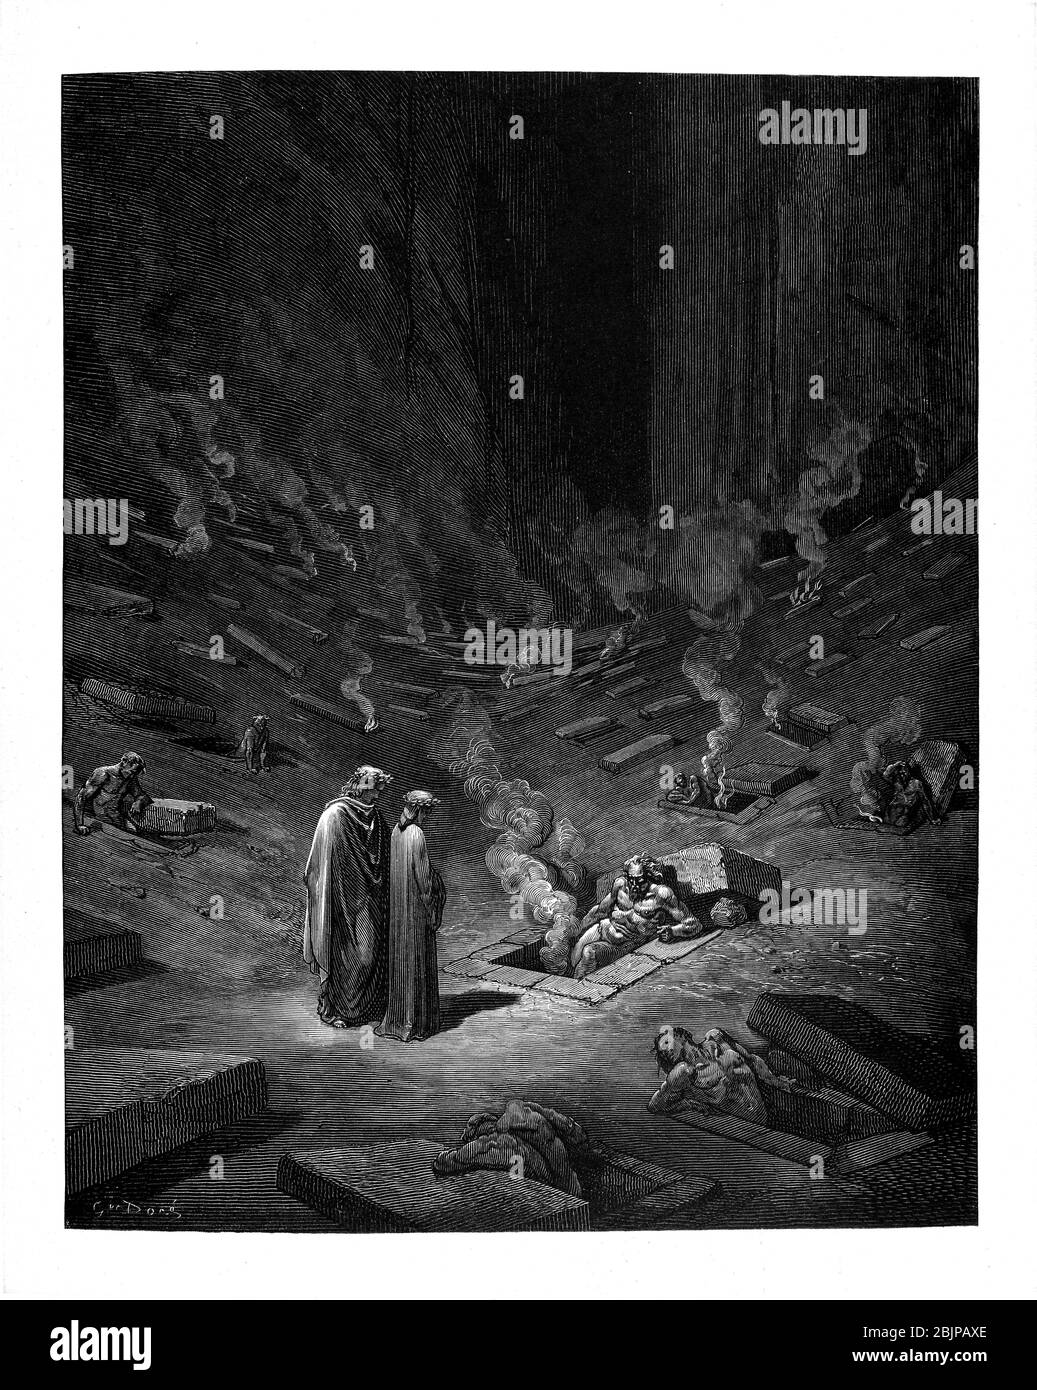 De la Divine Comédie par le poète italien du XIVe siècle Dante Alighieri. 1860 œuvres d'art, de l'artiste français Gustave Dore et gravées par Stéphane Pannemaker, de 'la Vision de l'Enfer' (1868), traduction anglaise de Cary de l'Inferno. Dante a écrit son poème épique "Divina Commedia" (la Divine Comedy) entre 1308 et sa mort en 1321. Composé de 14 233 lignes, et divisé en trois parties (Inferno, Purgatorio et Paradiso), il est considéré comme la plus grande œuvre littéraire en langue italienne et un chef-d'œuvre mondial. Il s'agit d'une étude complète de la théologie, de la littérature et de la pensée médiévales. Le nouveau non Banque D'Images